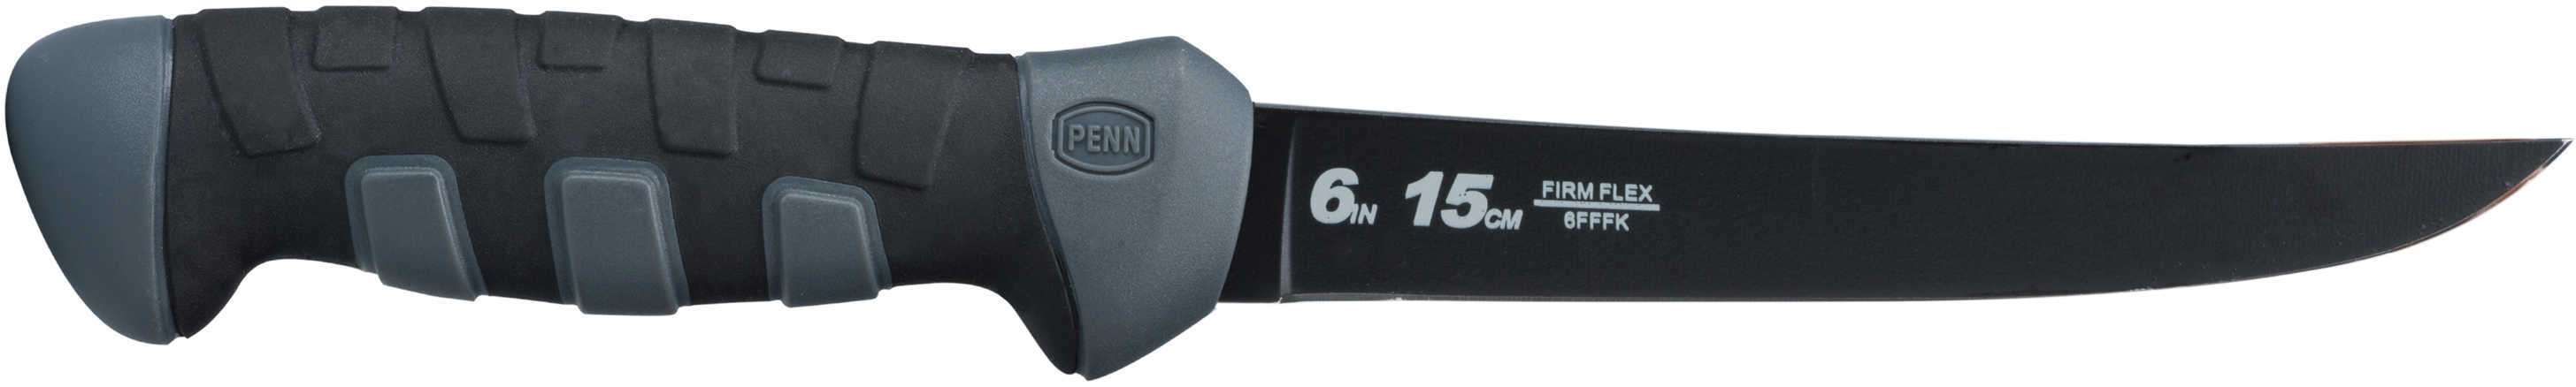 Penn Fillet Knives 6" Firm, Black/Gray Md: 1366266